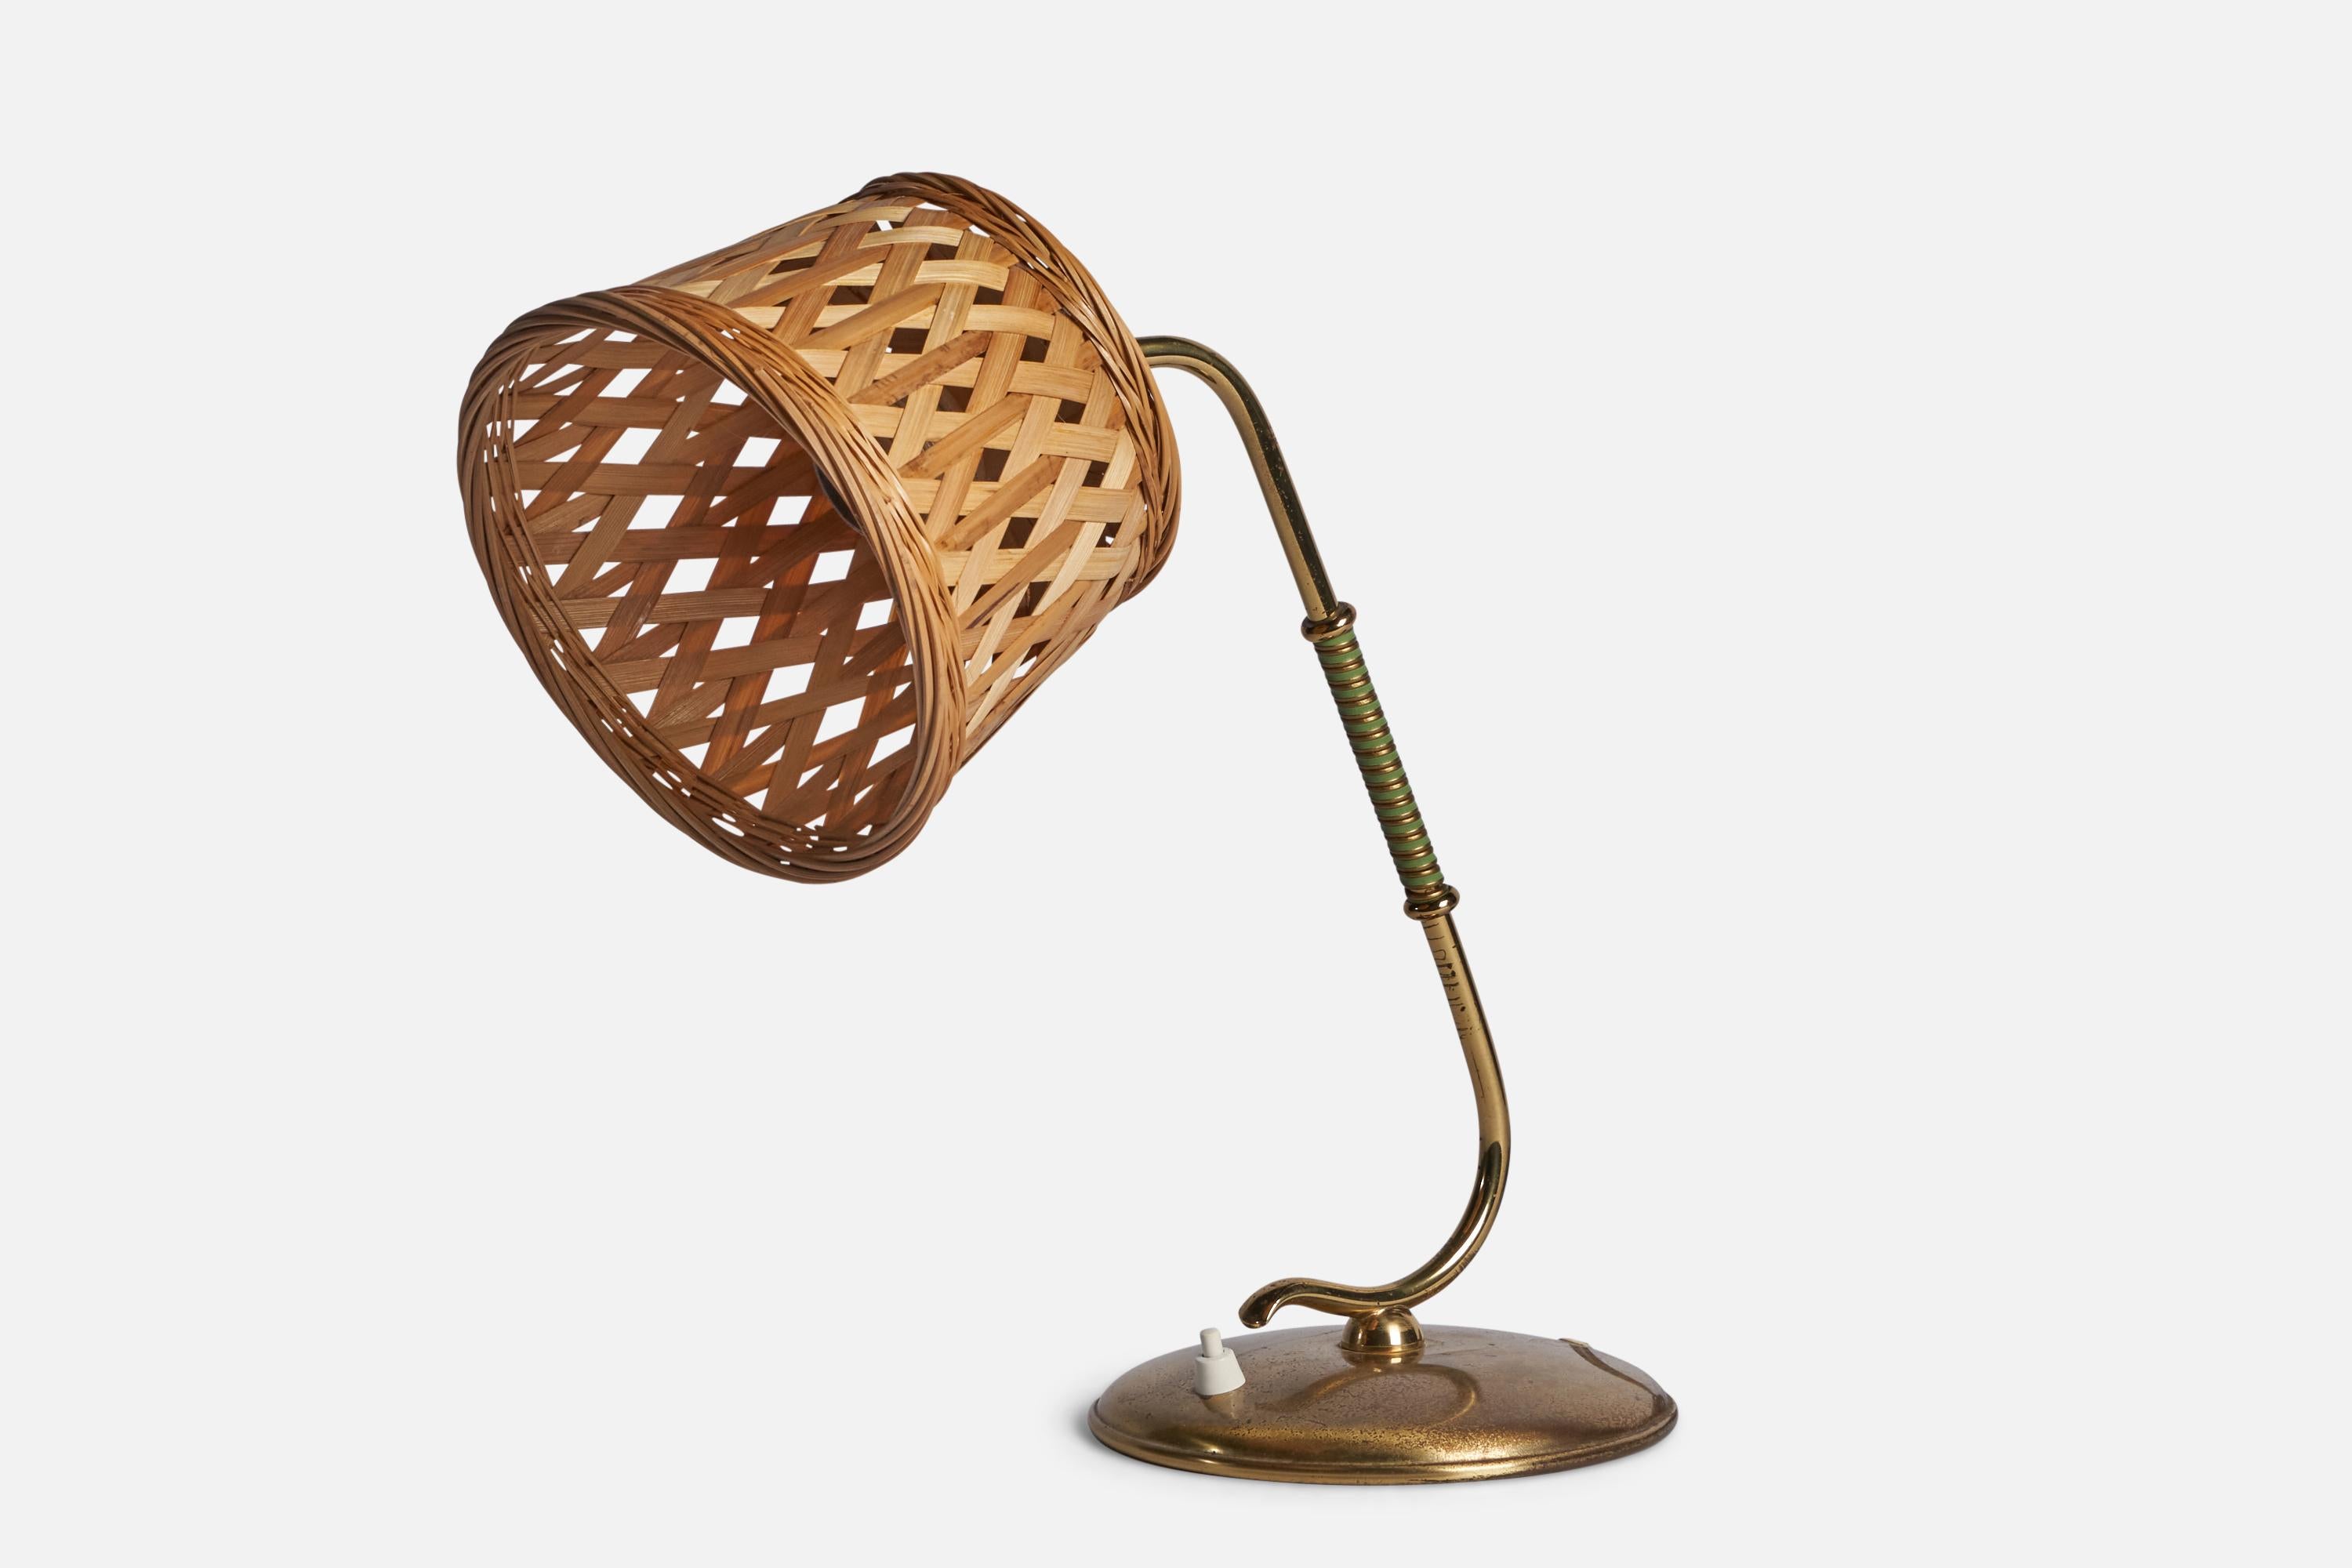 Lampe de table réglable en laiton et en rotin, conçue et produite par Valinte I.C., Finlande, c.C. 1940.
Dimensions globales (pouces) : 13.4